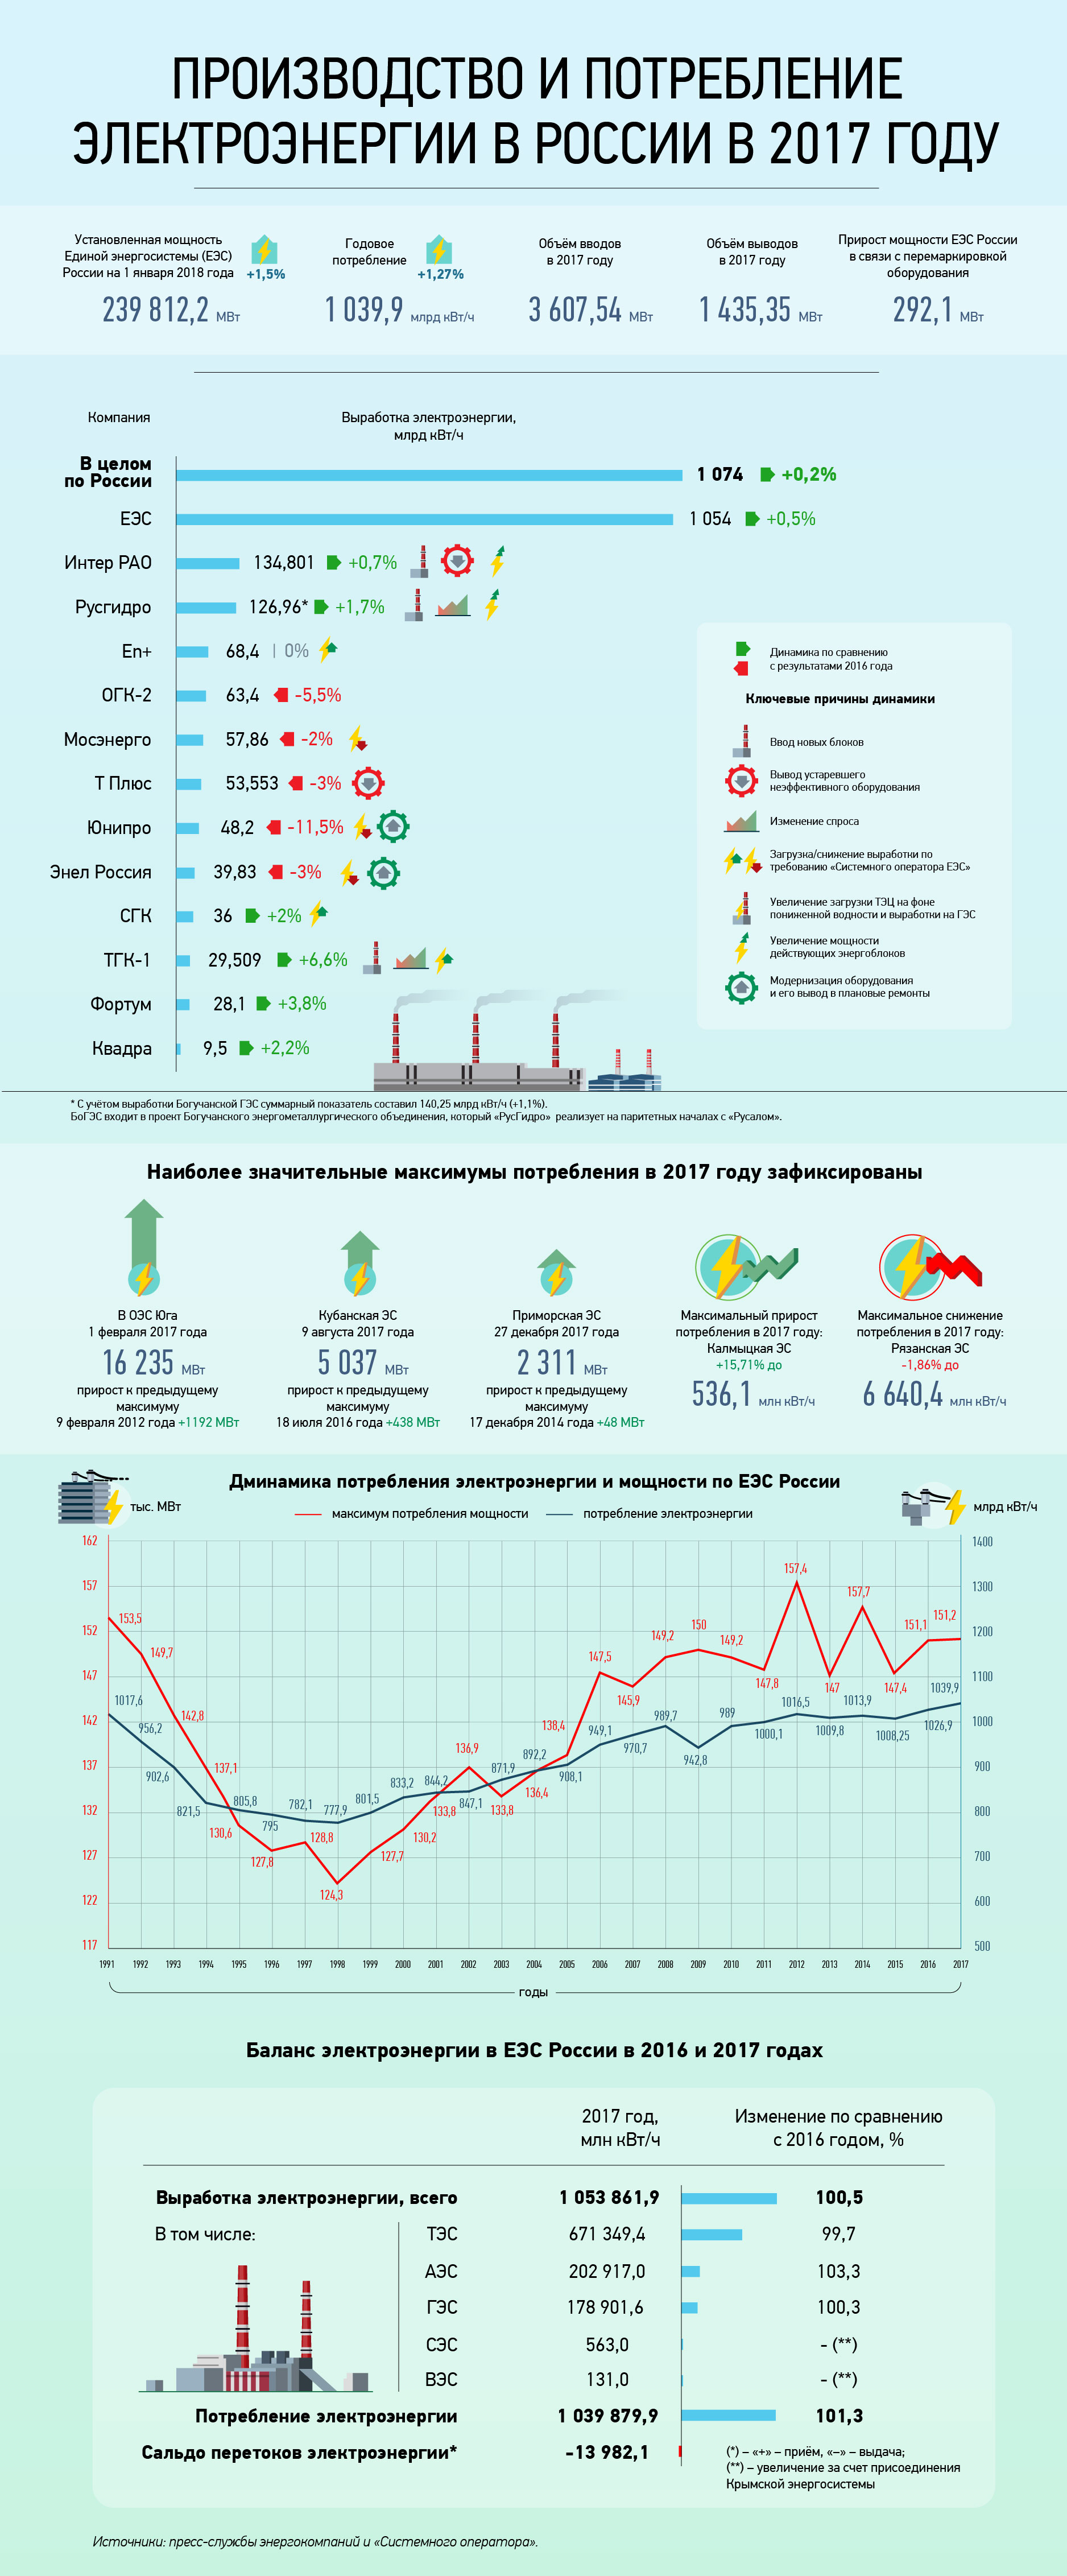 Производство и потребление электроэнергии в России в 2017 году